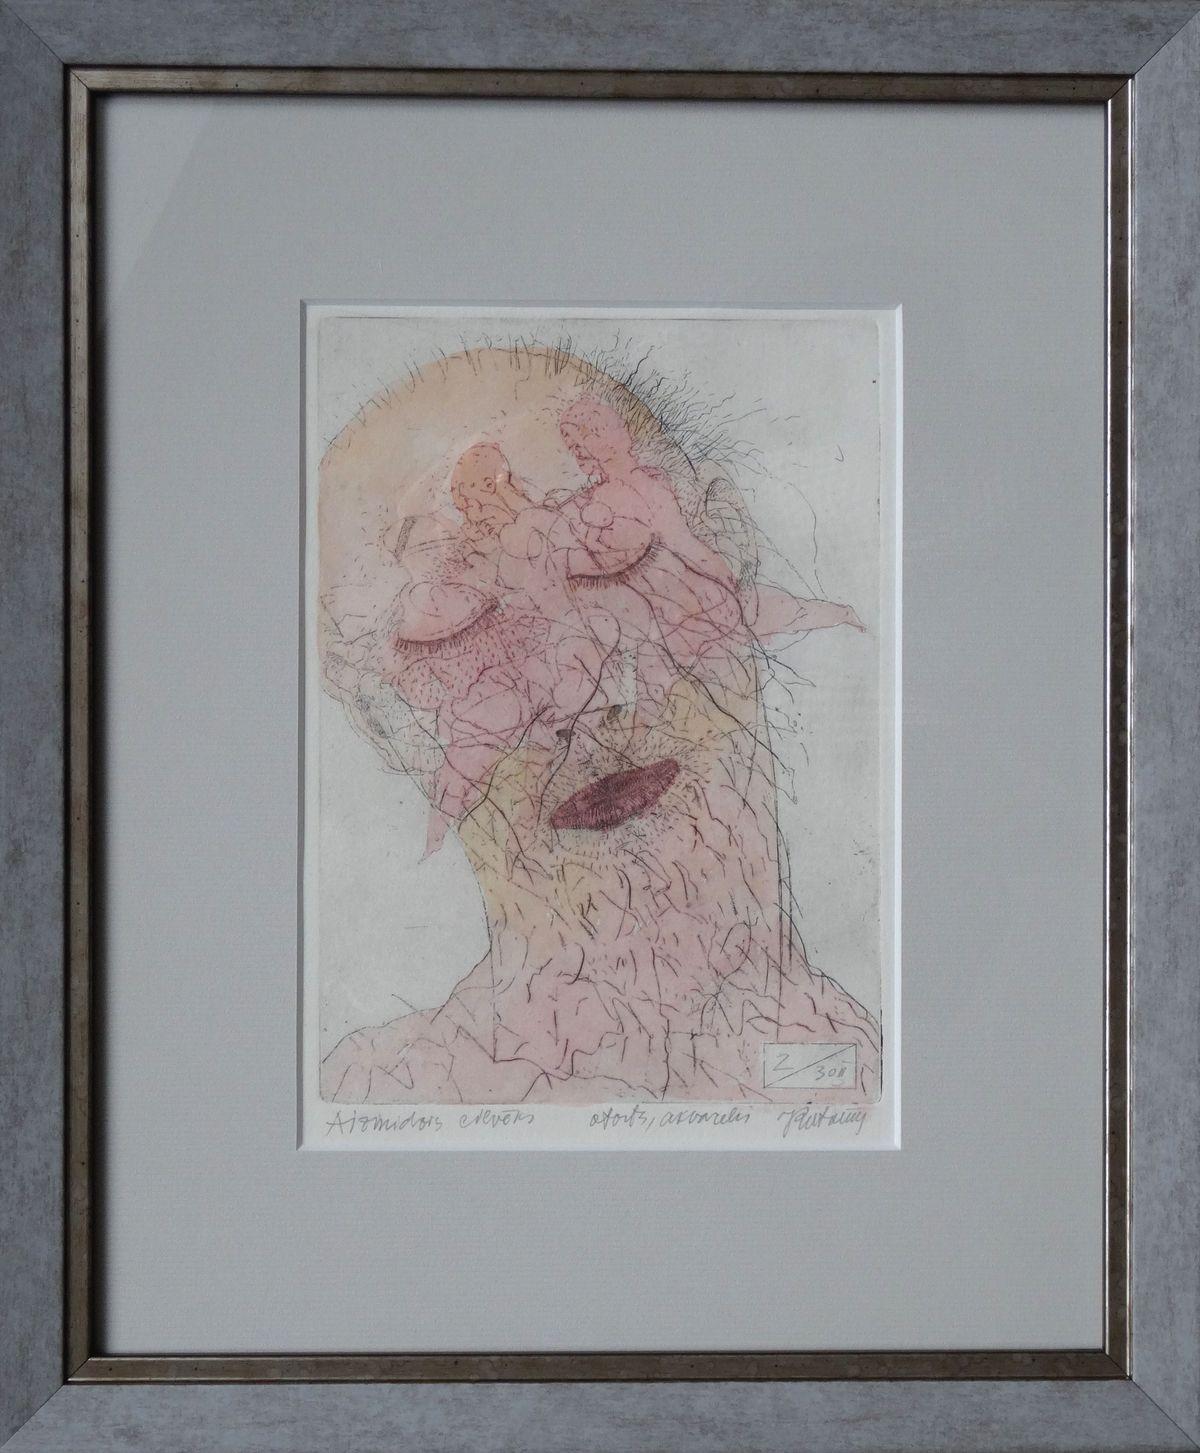 Homme endormi. Papier, eau-forte, aquarelle, 19x13 cm - Print de Juris Putrams 